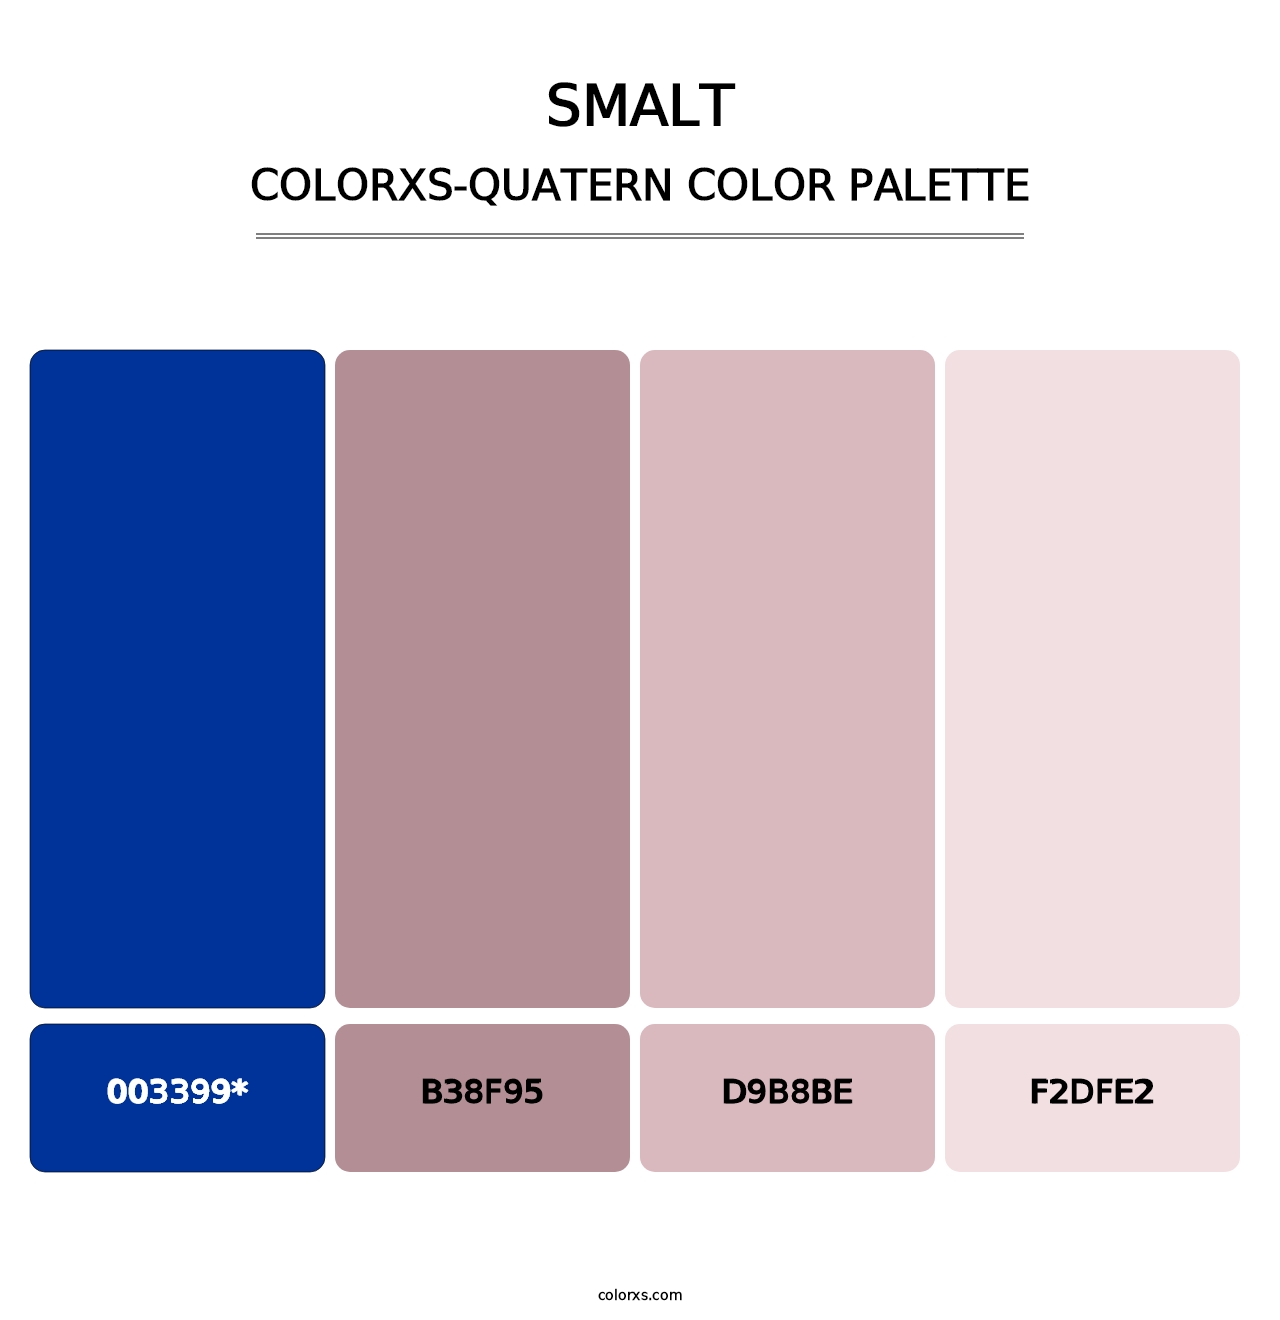 Smalt - Colorxs Quatern Palette